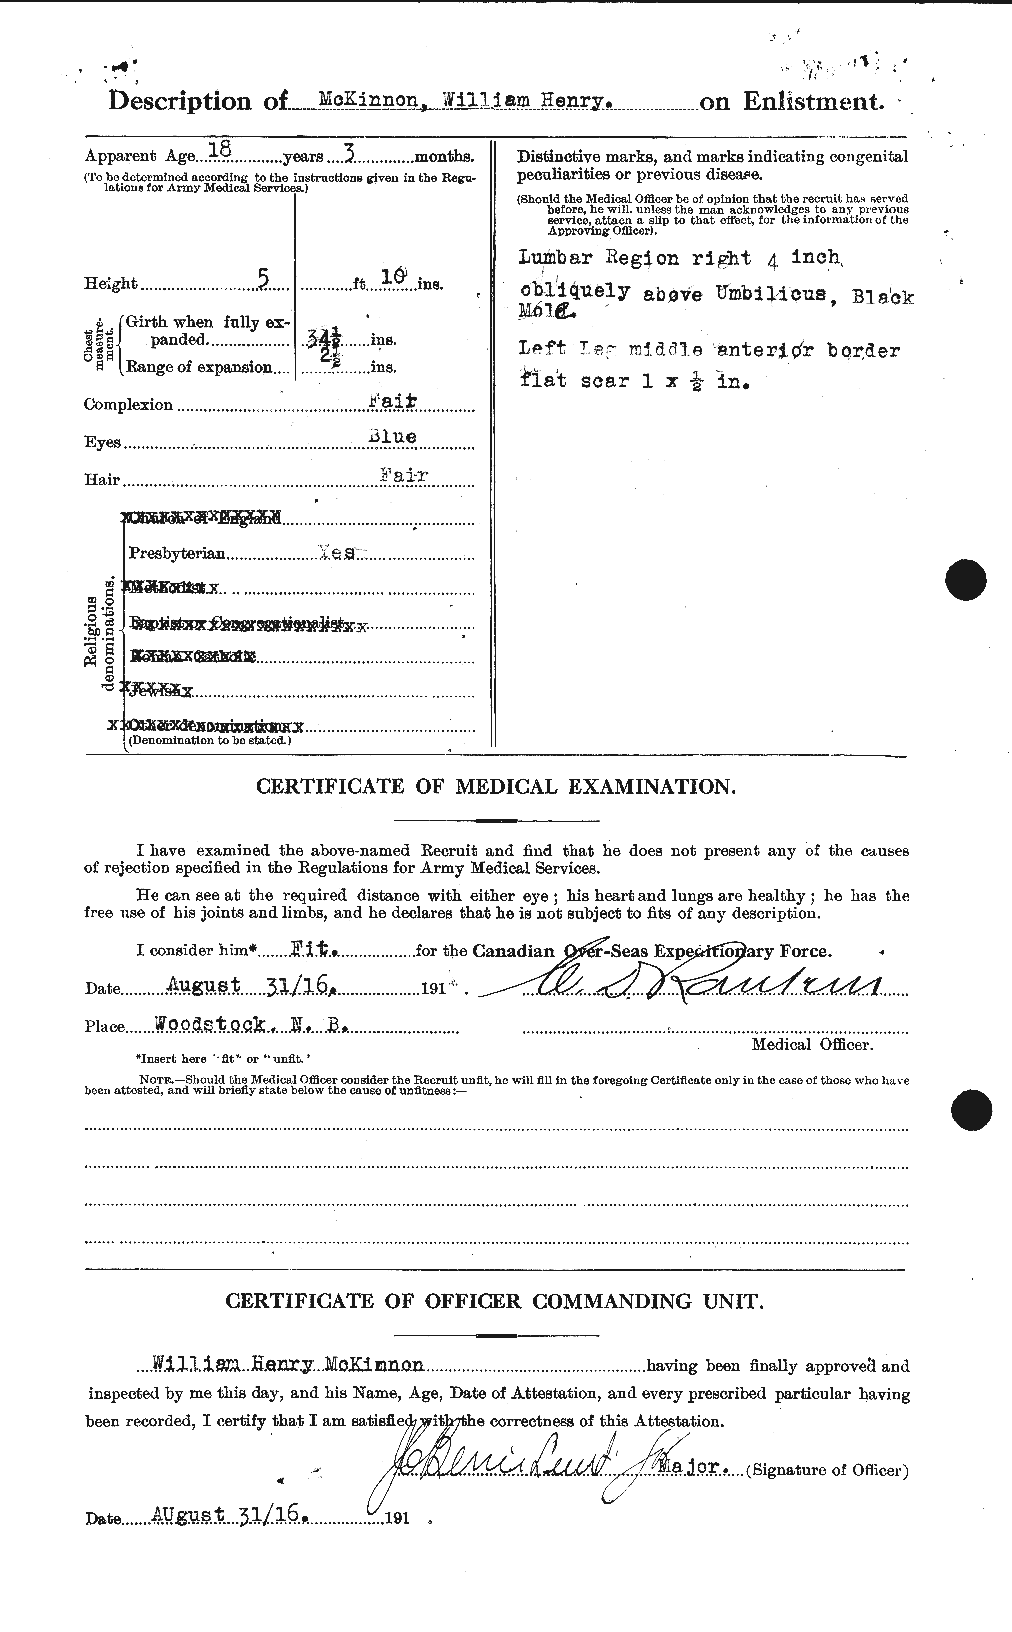 Dossiers du Personnel de la Première Guerre mondiale - CEC 534329b